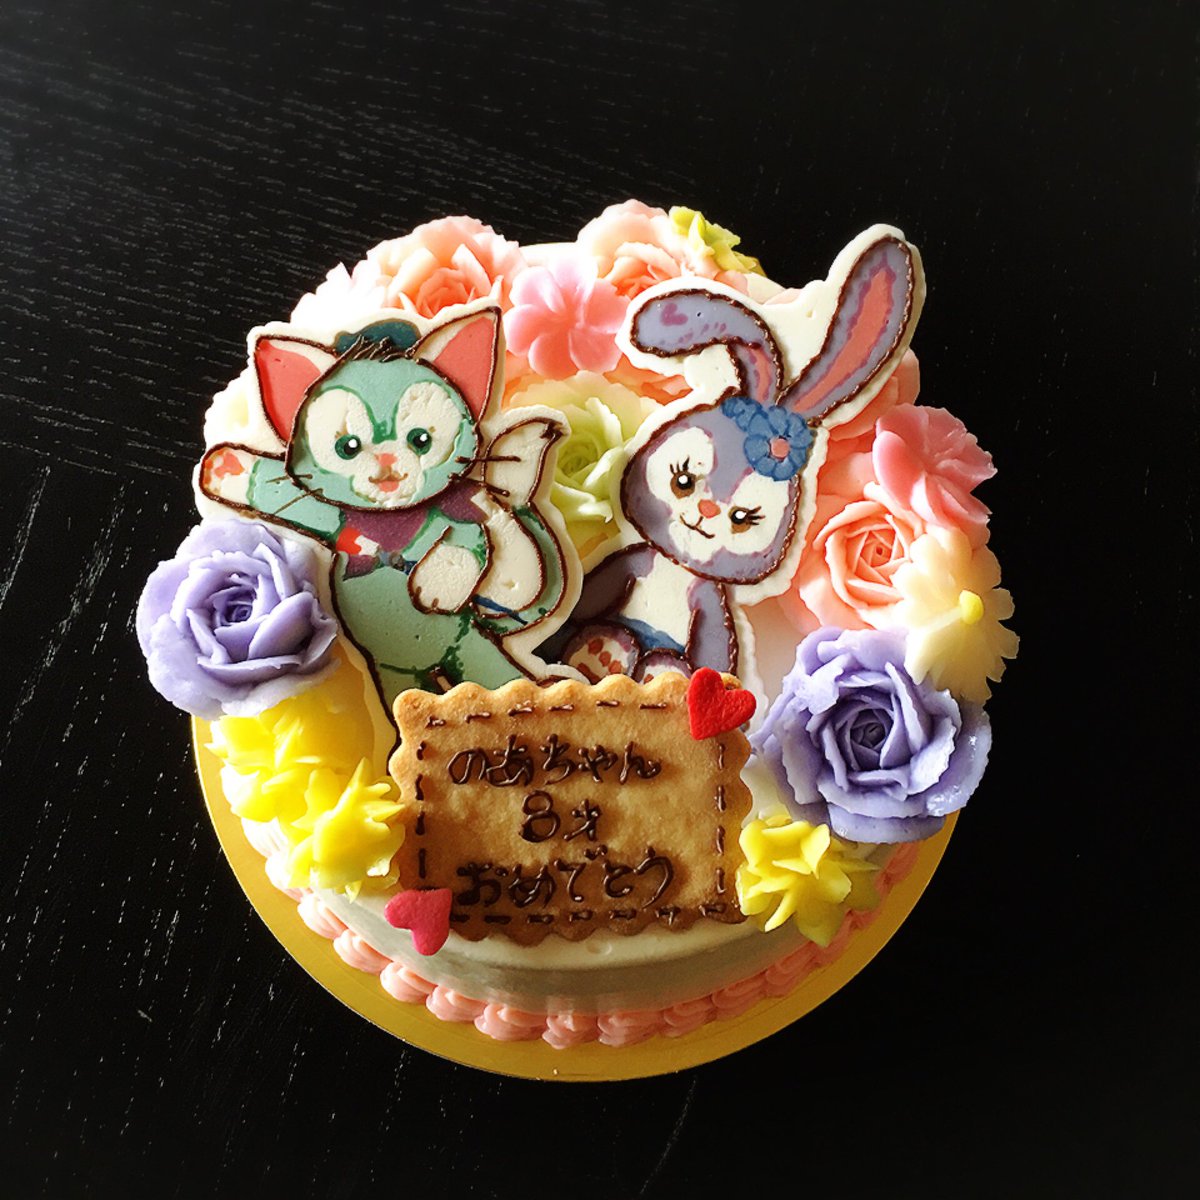 Cafe De Realite No Twitter 本日のオーダーケーキ 毎年ありがとうございます 今年も1年良い年になりますように 岐阜 キャラクターケーキ Charactercake かき氷 フラワーケーキ オーダーケーキ お菓子教室 カフェドリアリティ プレゼント T